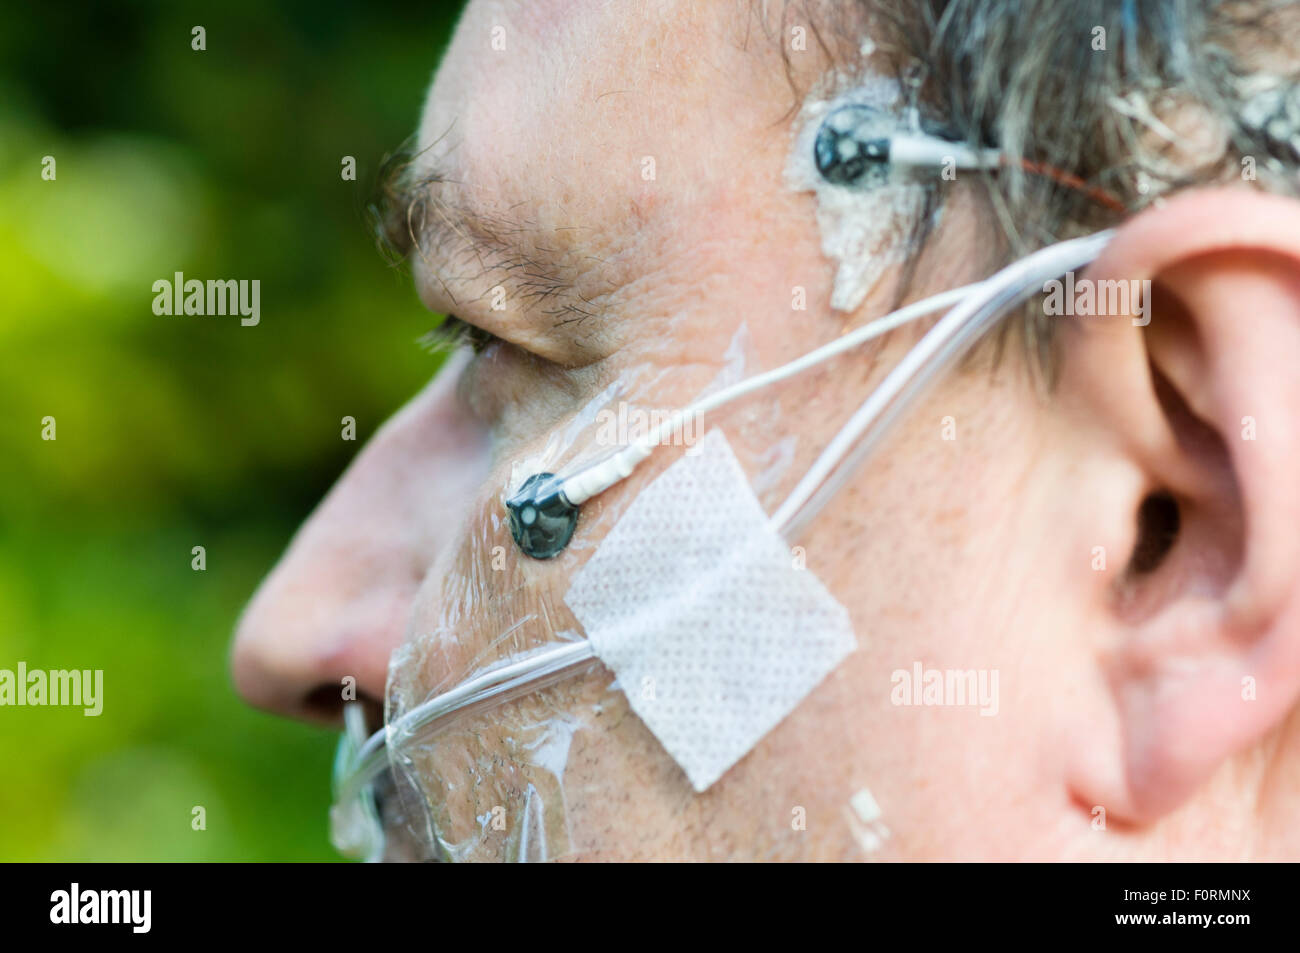 Un uomo di mezza età indossa gli elettrodi di polisonnografia per misurare l'attività cerebrale, la respirazione e il movimento durante il sonno. Foto Stock